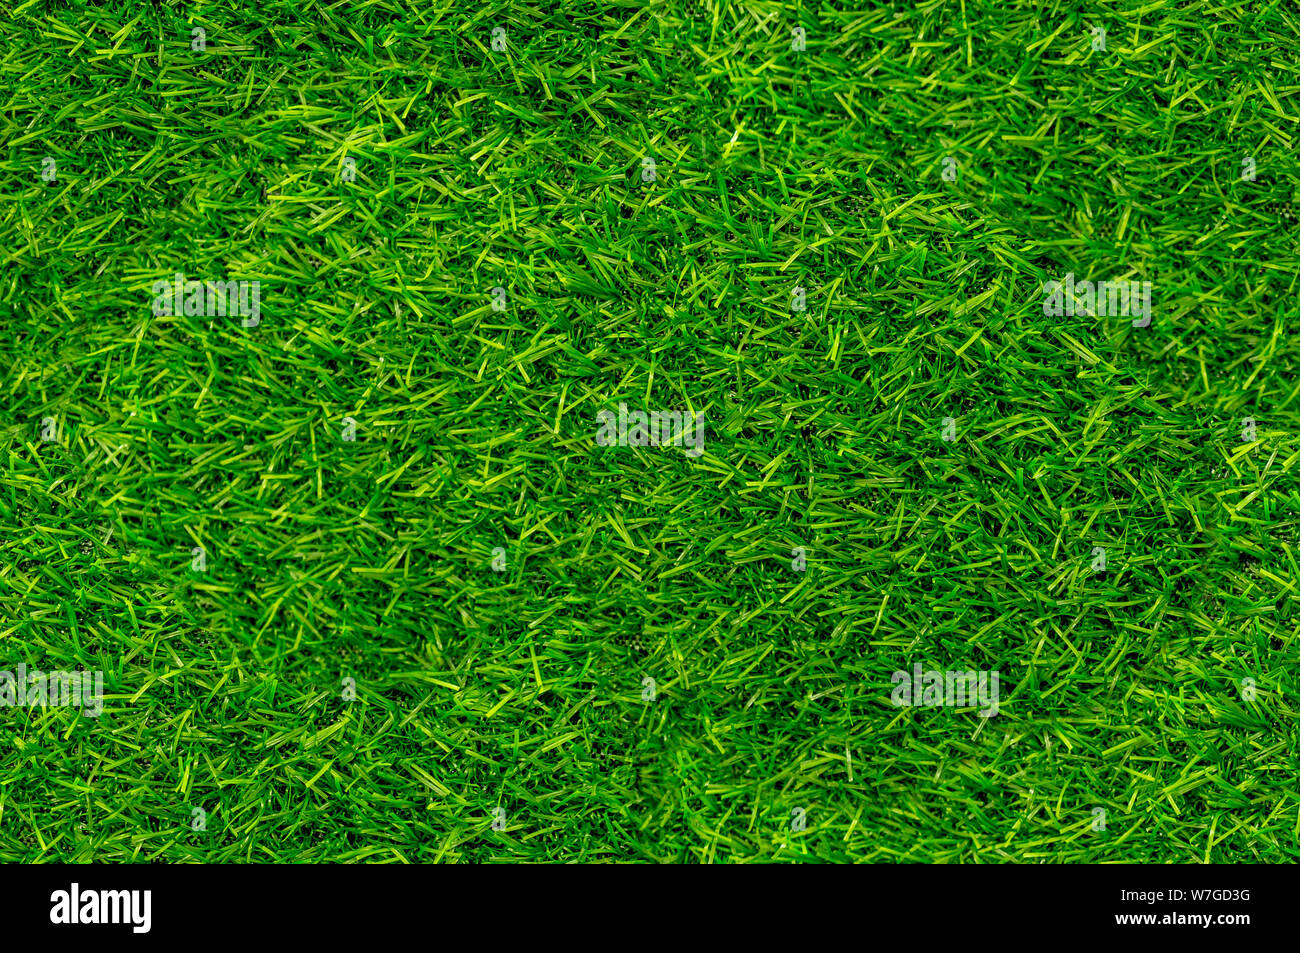 Green grass seamless texture. Seamless horizontal pattern. Artificial Grass background. Stock Photo